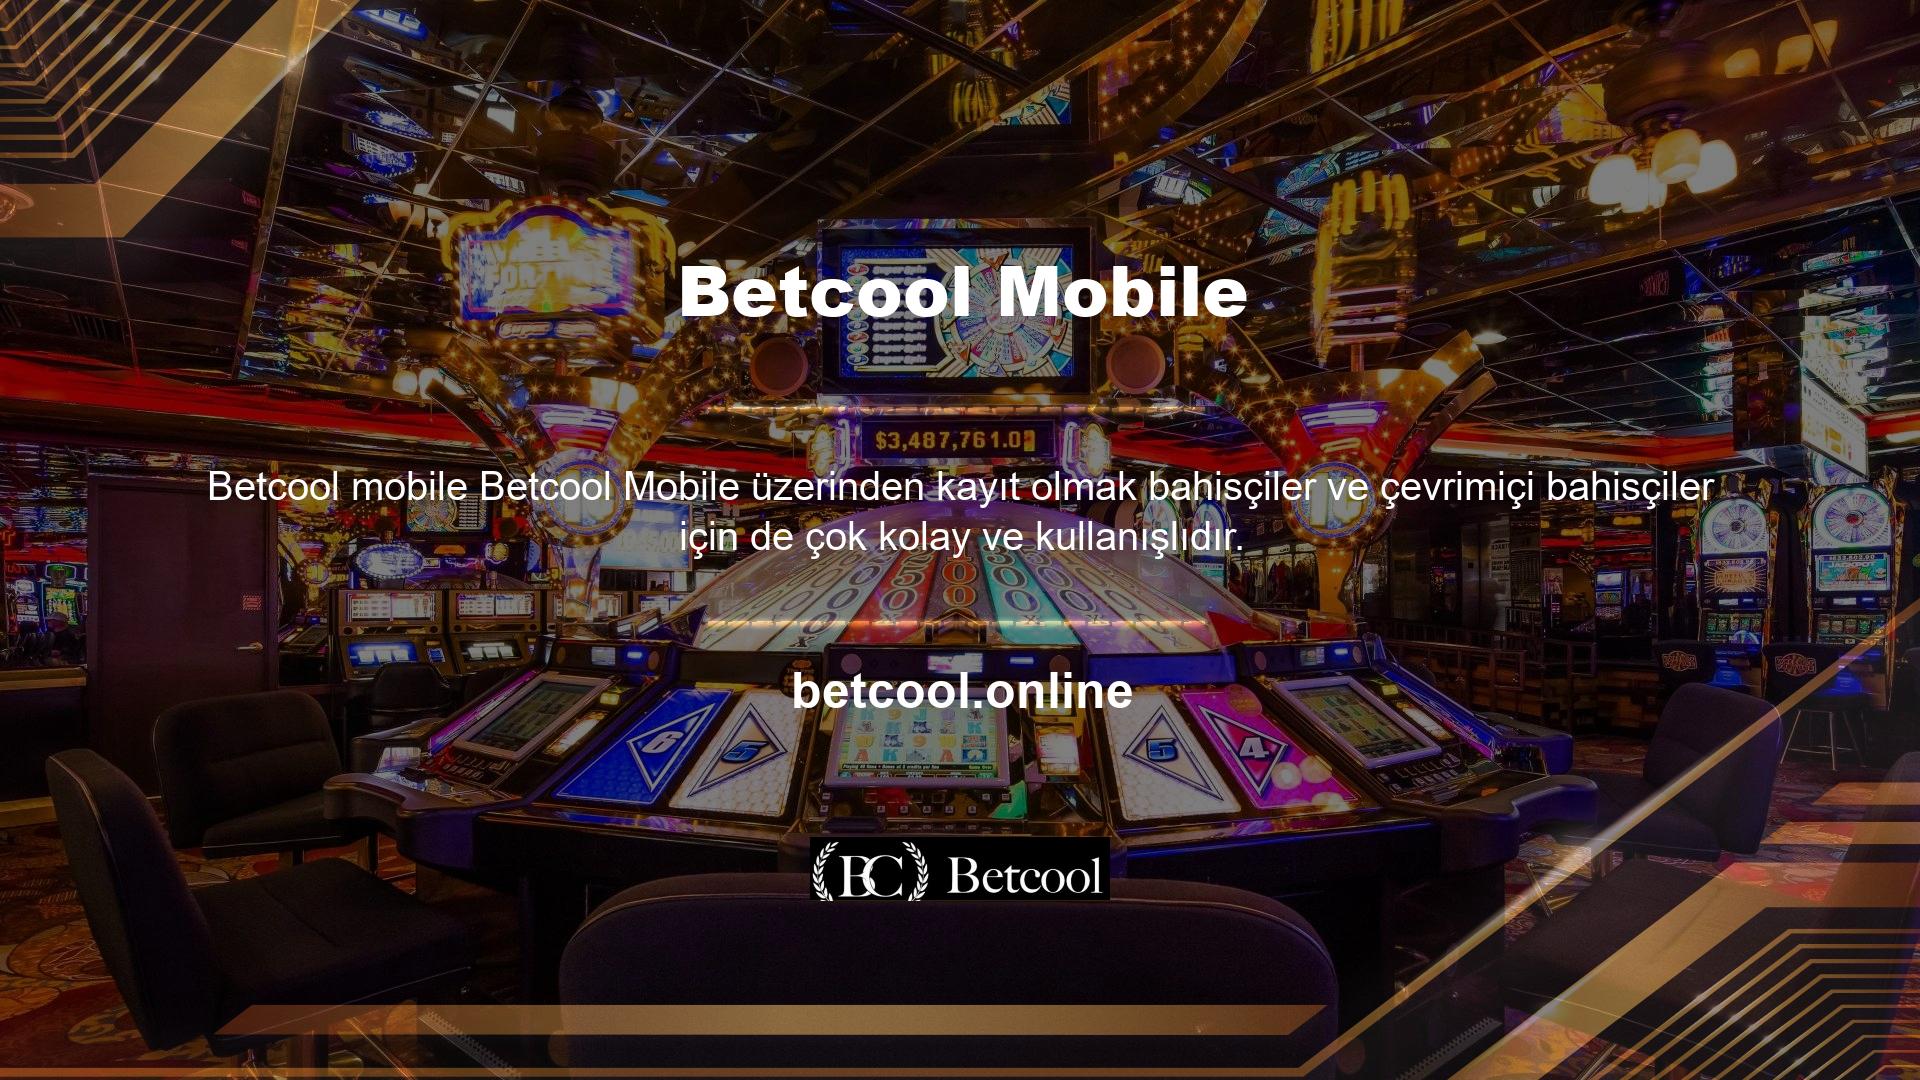 Yüksek kaliteli Betcool mobil bağlantıları ve Betcool Mobil uyumlu web siteleri, web sitesi kullanıcılarına nerede olurlarsa olsunlar web sitenizde daha iyi hizmet verilmesini sağlar